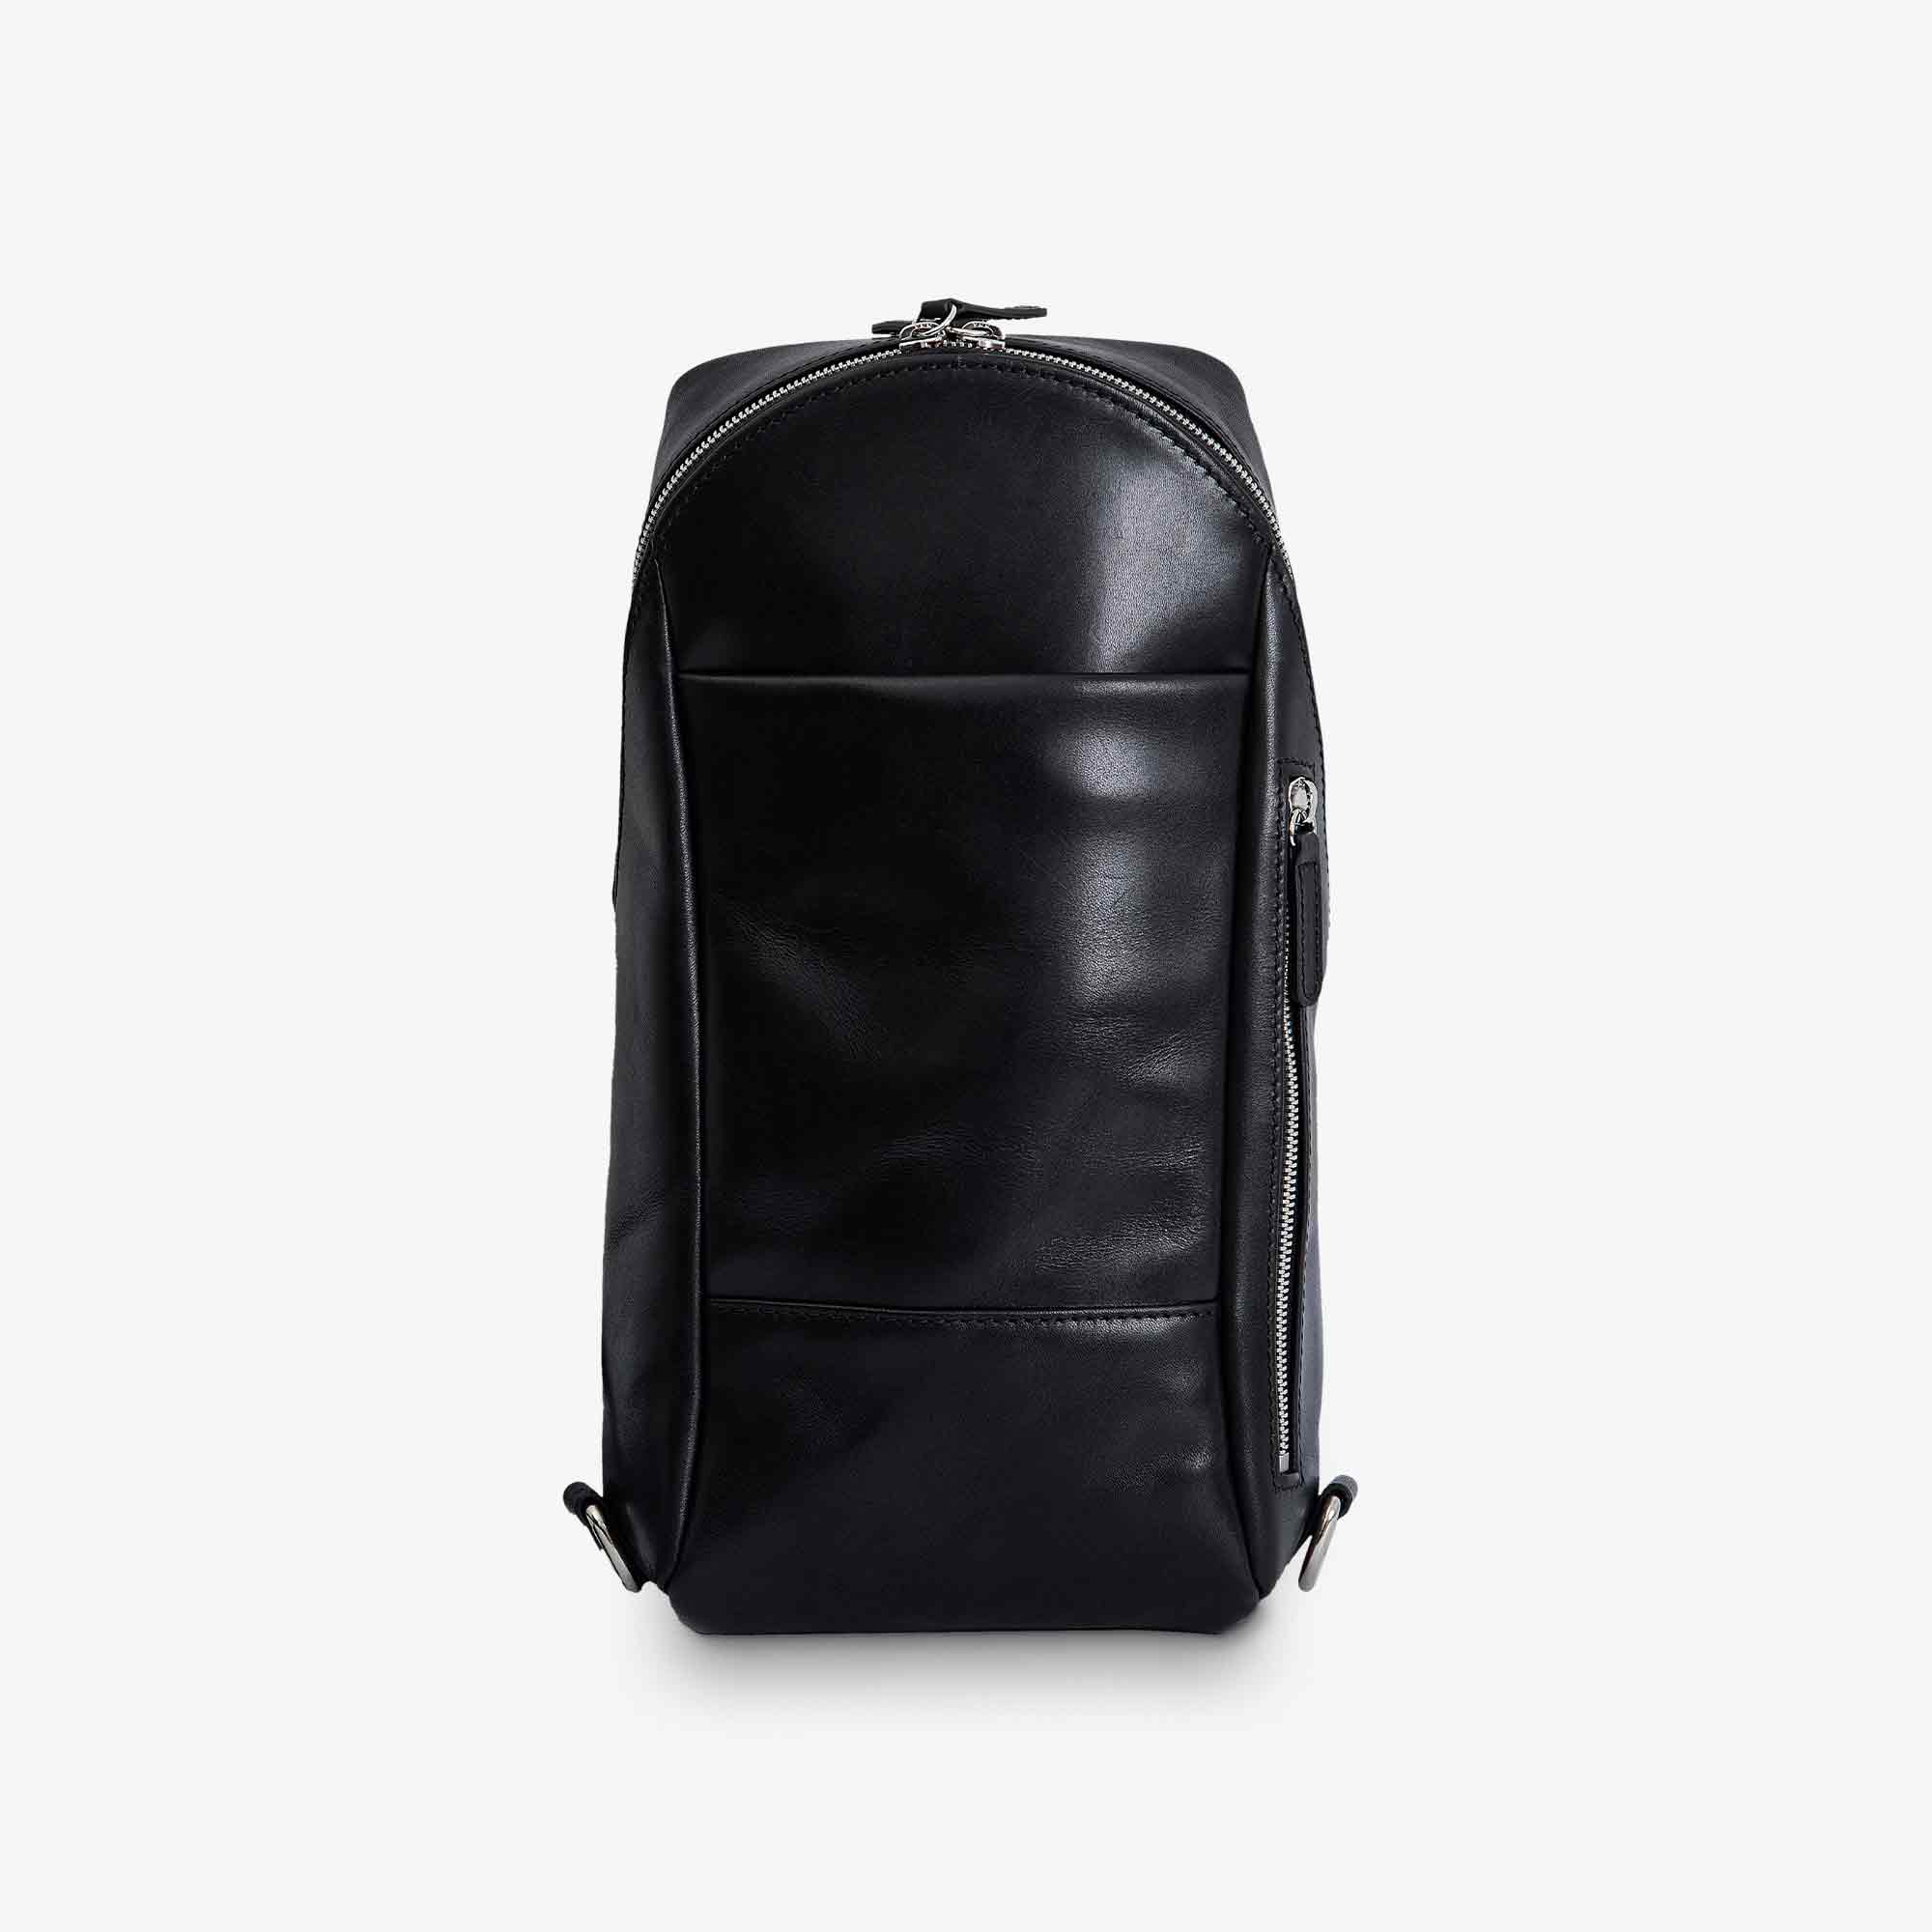 Full and Top Grain Artisan Leather Bags - PEGAI